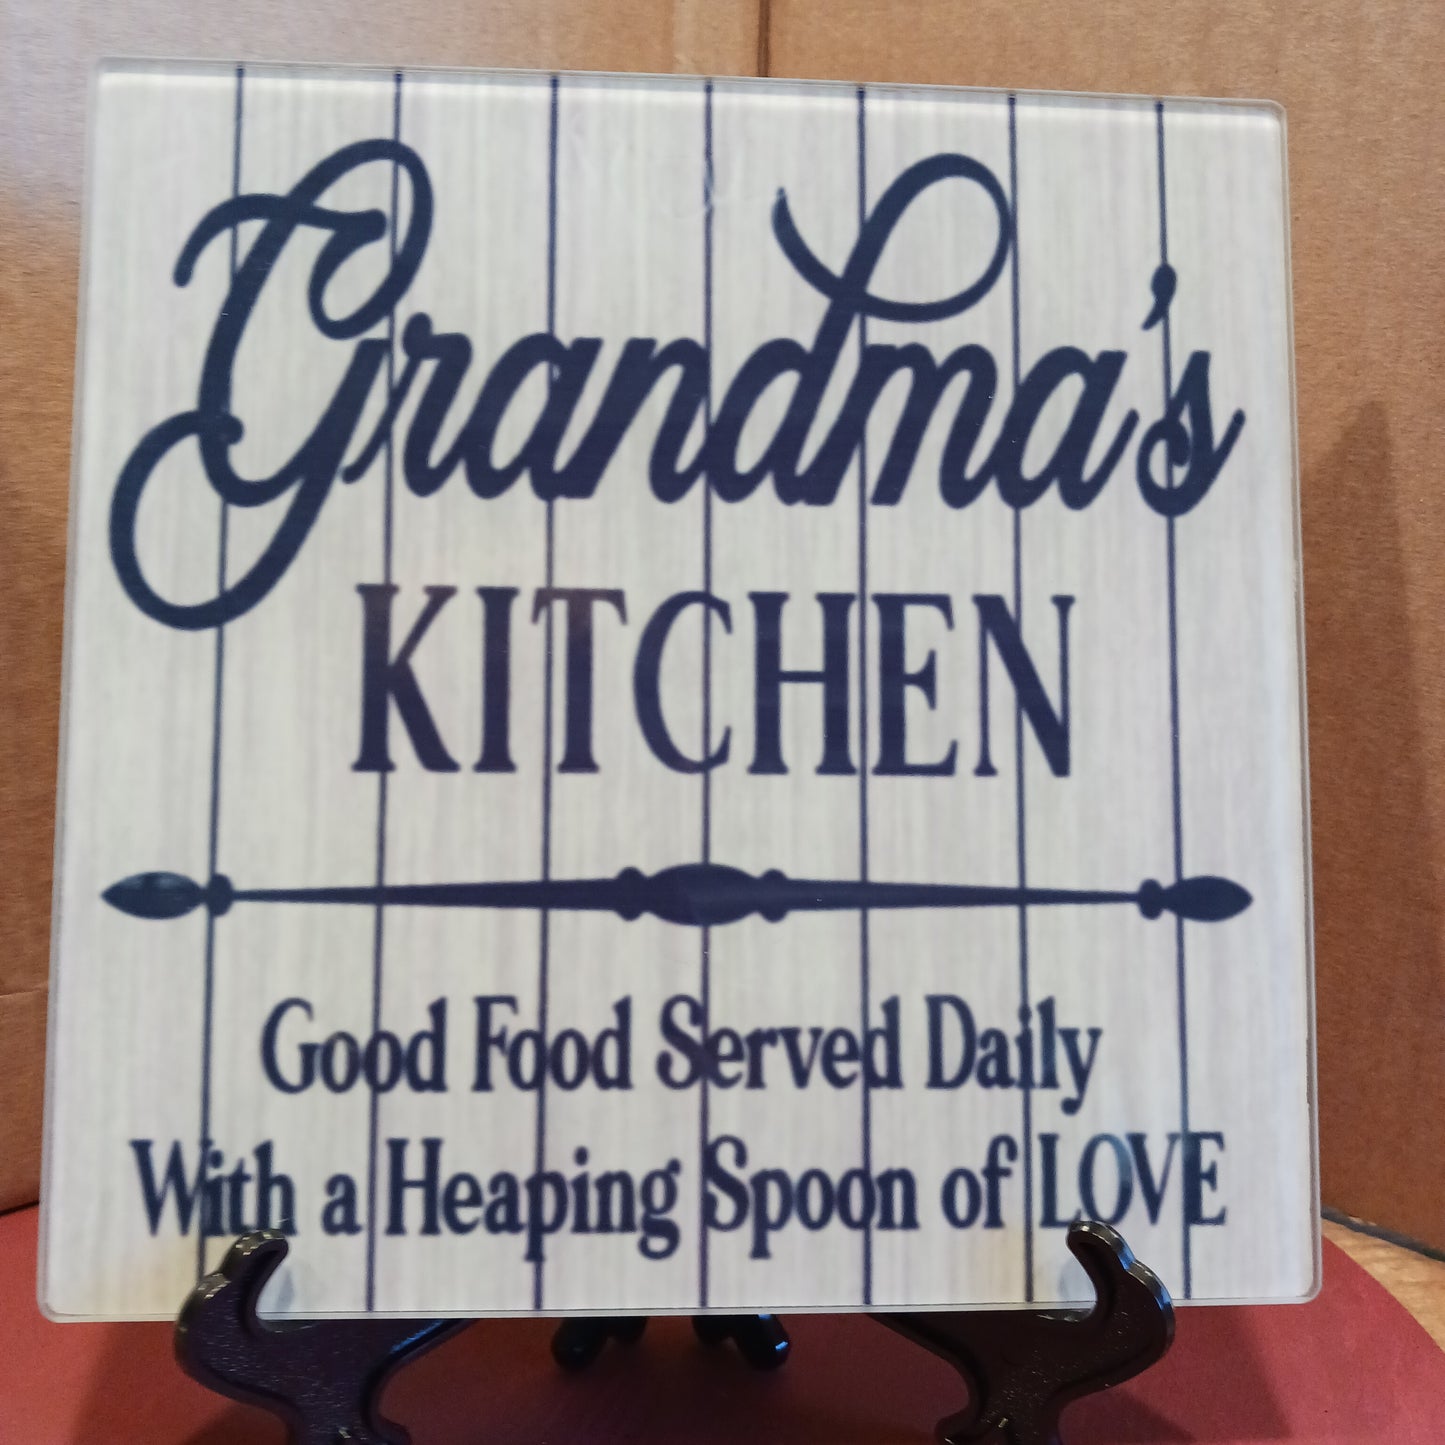 Grandmas kitchen